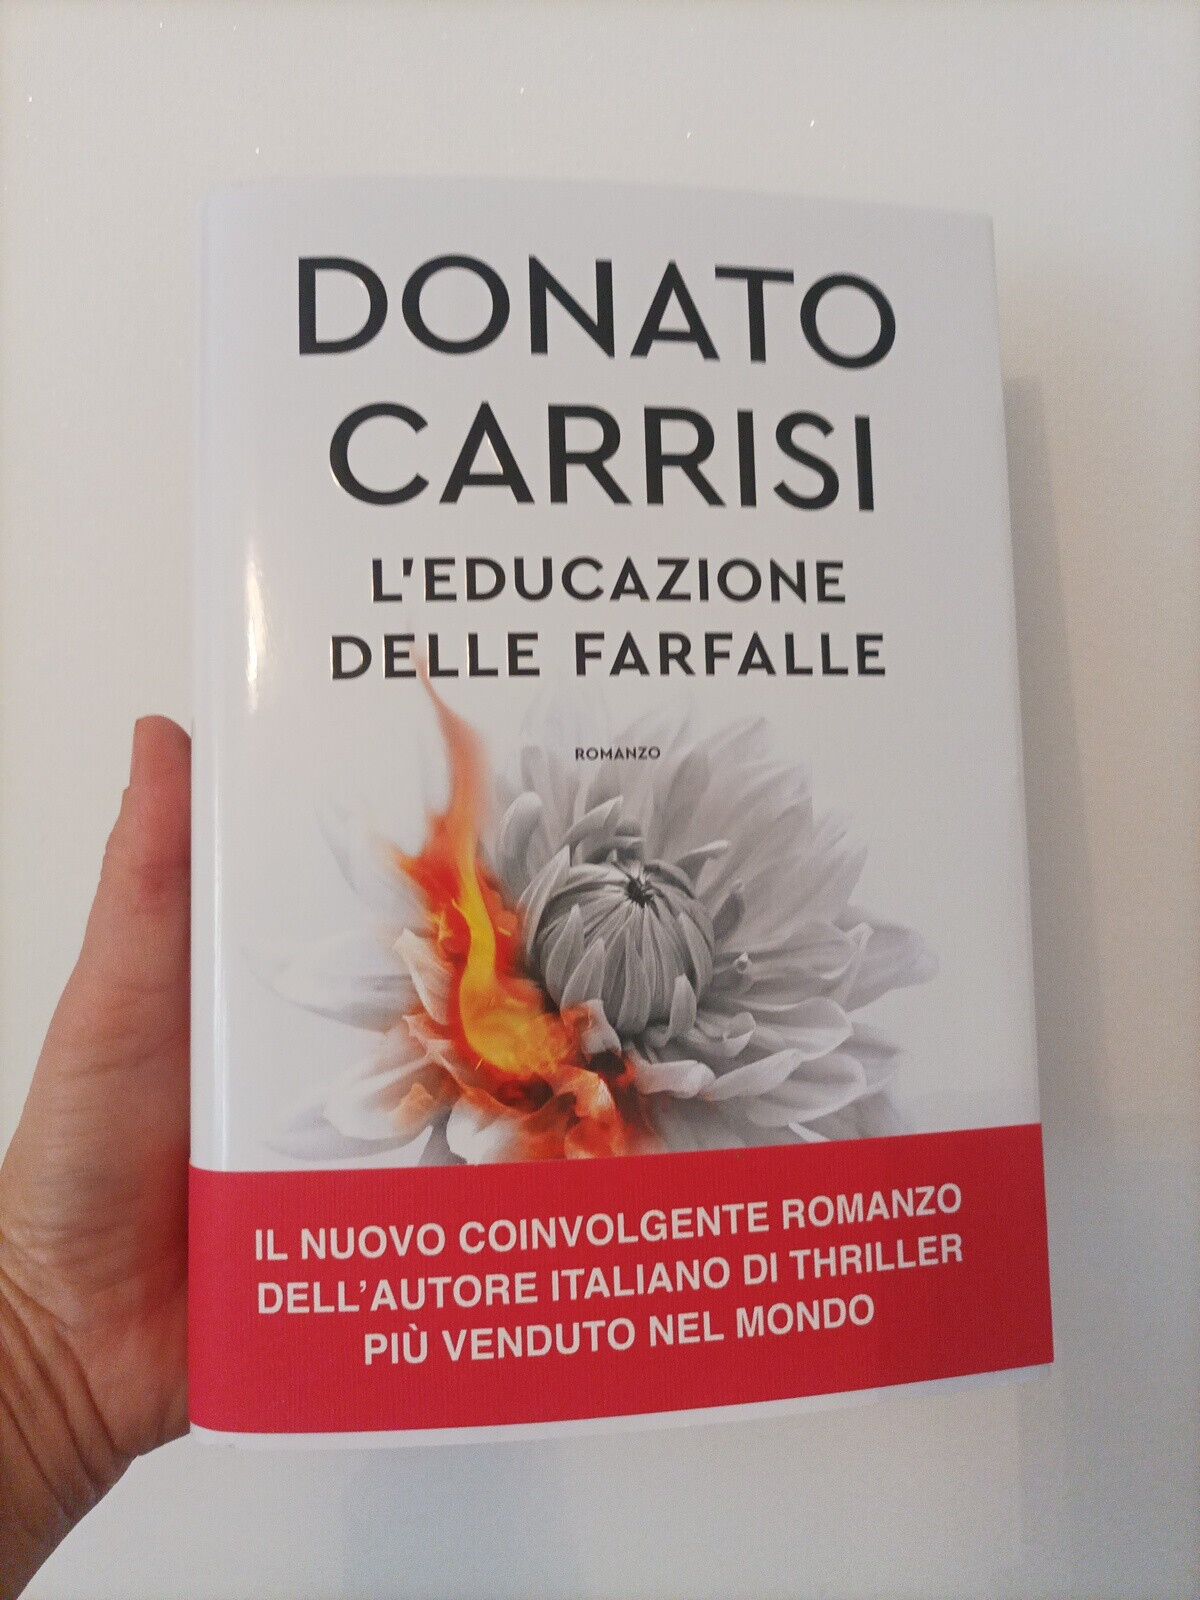 DONATO CARRISI, L"EDUCAZIONE DELLE FARFALLE